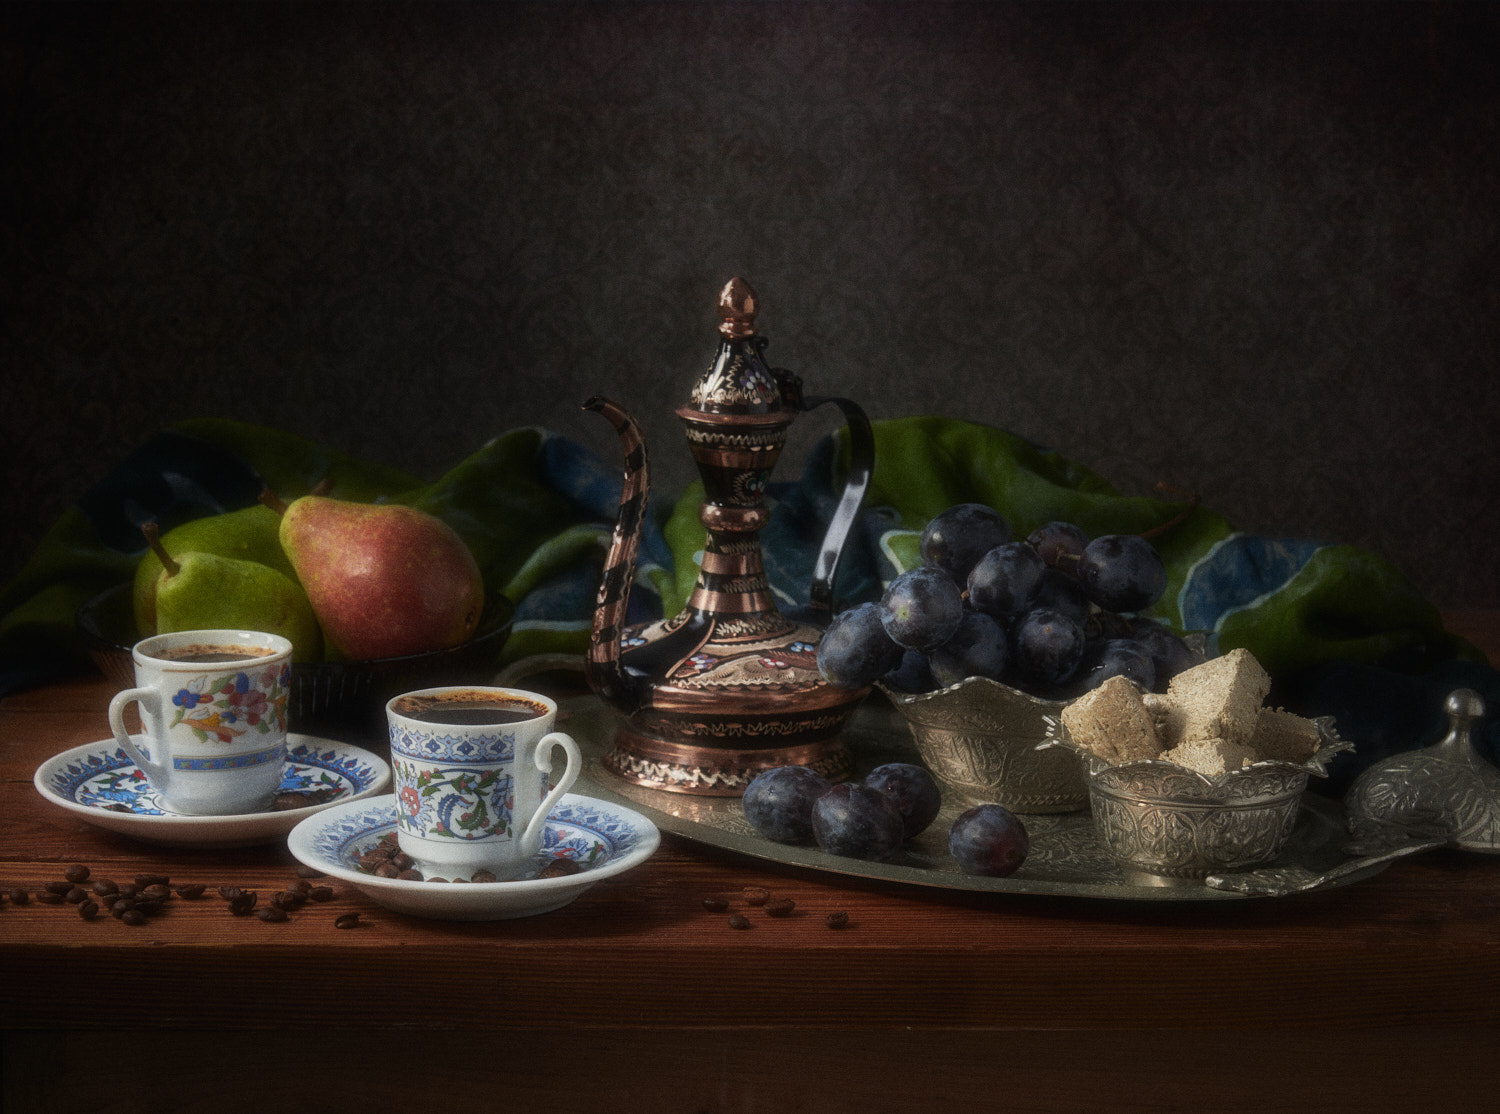 Две чашечки кофе натюрморт композиция постановка сцена сладости халва еда кофе груши виноград фрукты посуда кувшин